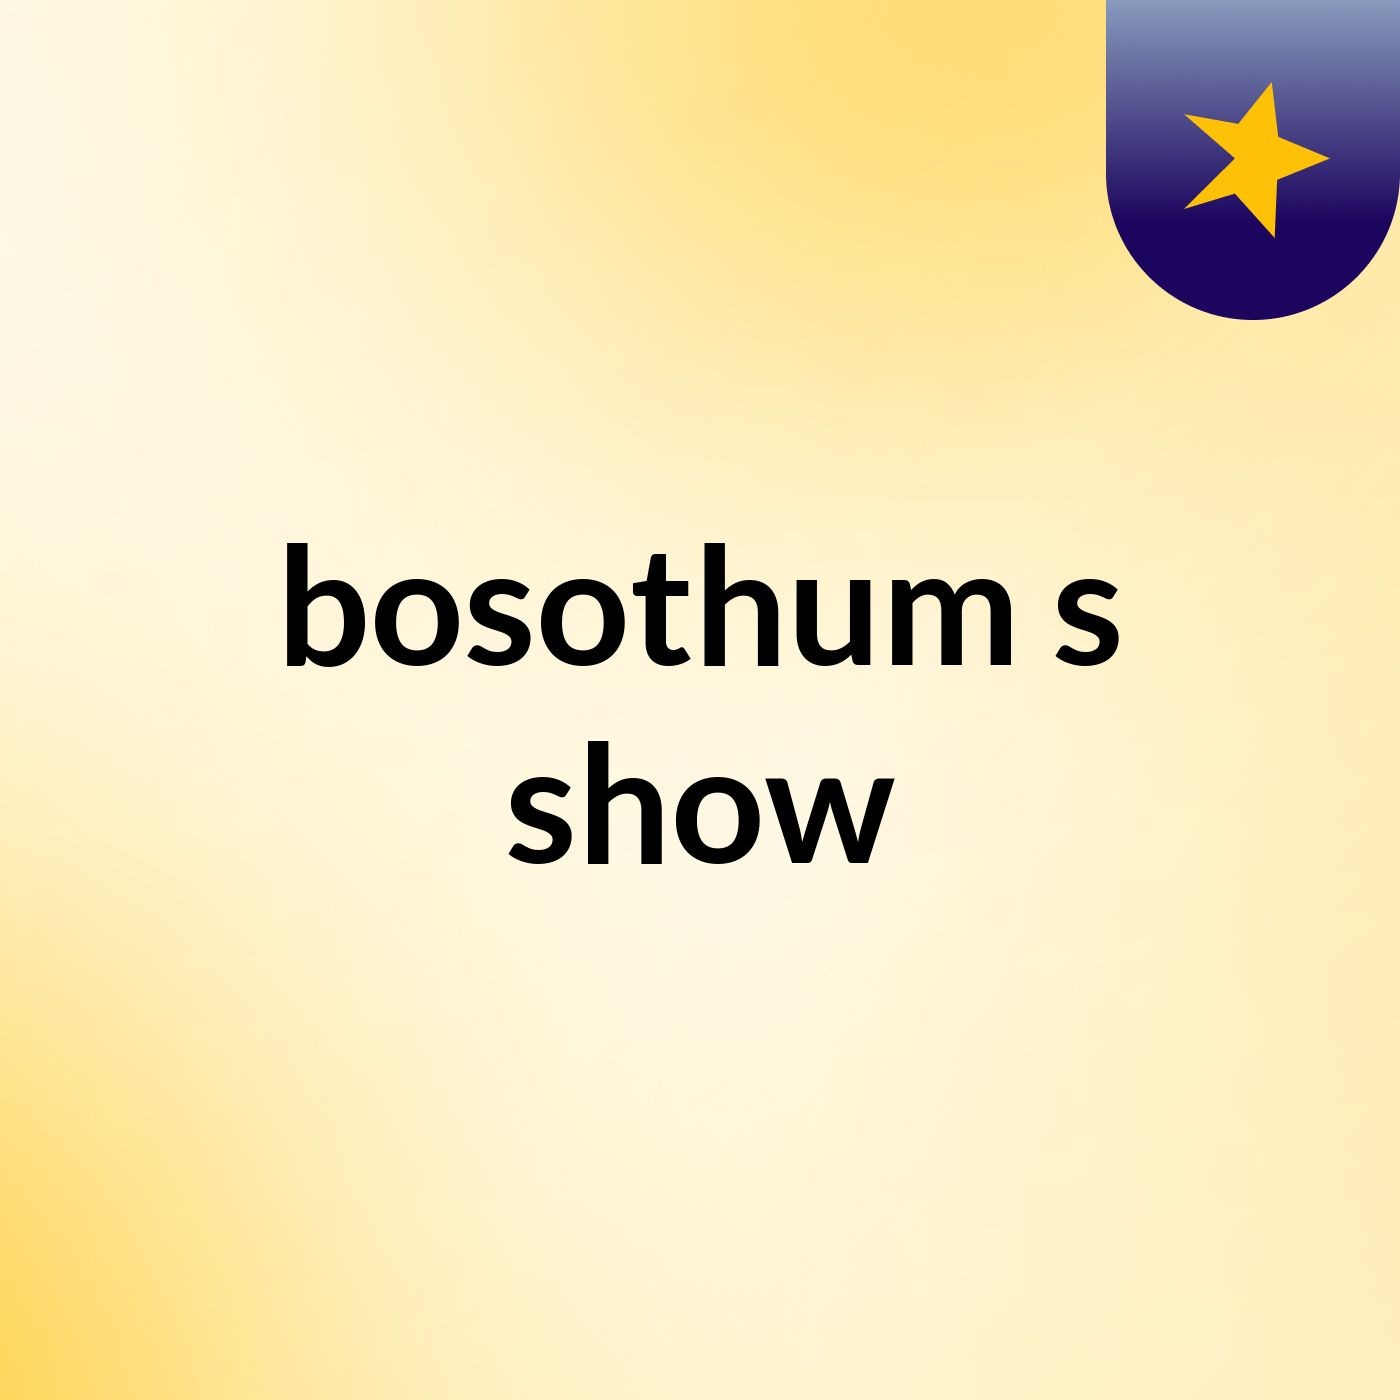 bosothum's show